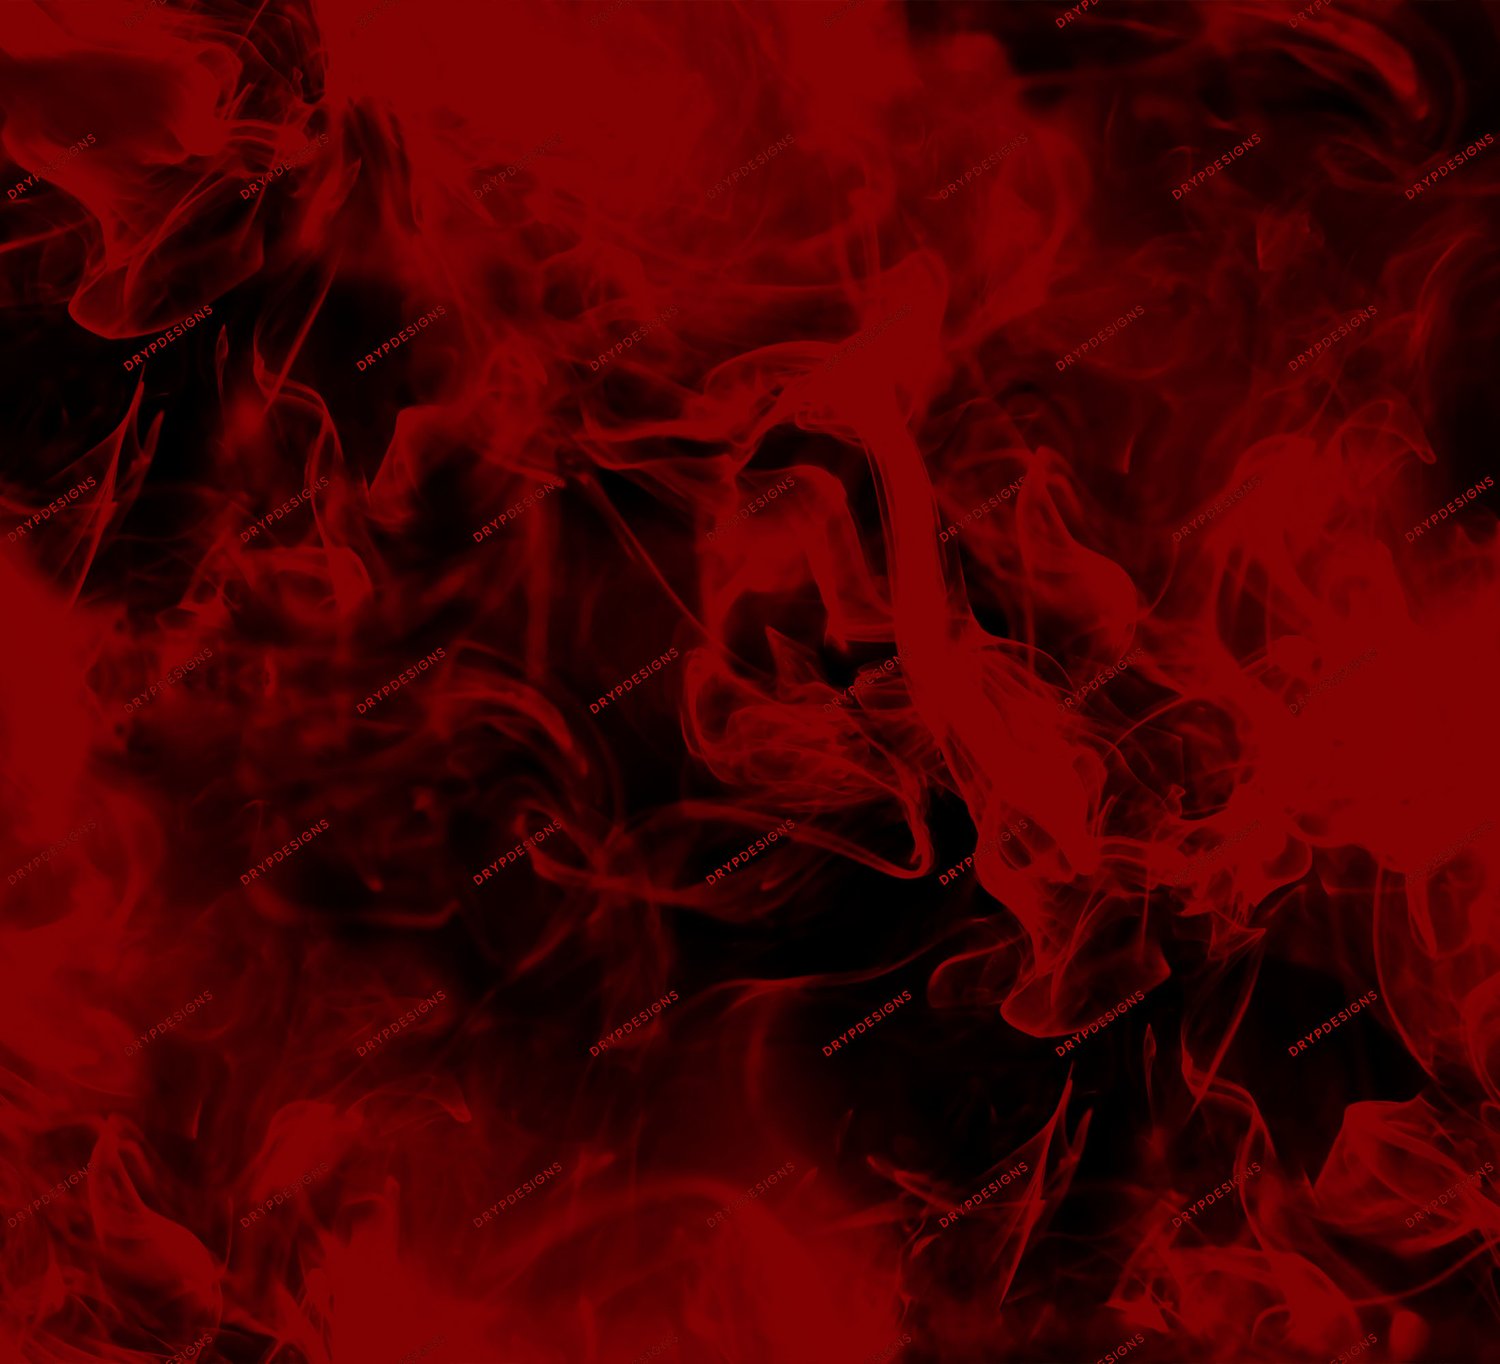 Nếu bạn là người yêu thích họa tiết thì hãy cẩn thận với hình ảnh đỏ nâu đen - họa tiết nền mịn khói này. Sự kết hợp của các gam màu này sẽ tạo ra một khối họa tiết độc đáo và rất nổi bật.